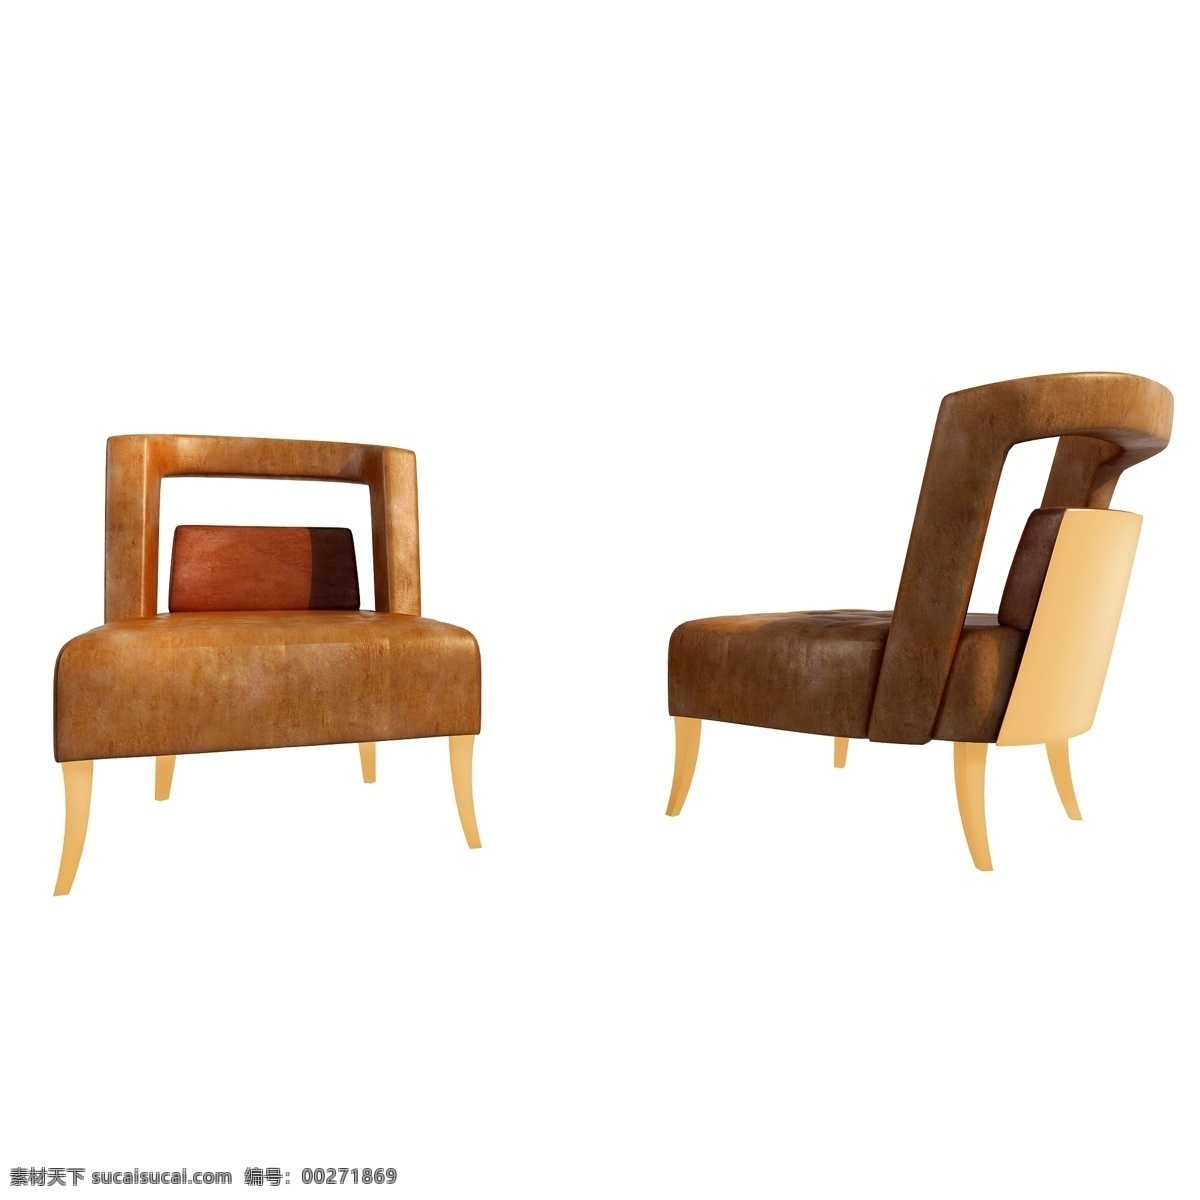 立体 单人 椅 图 皮质 皮纹 单人椅 沙发 椅子 舒适 狂野 金属 质感 3d 创意 套图 png图